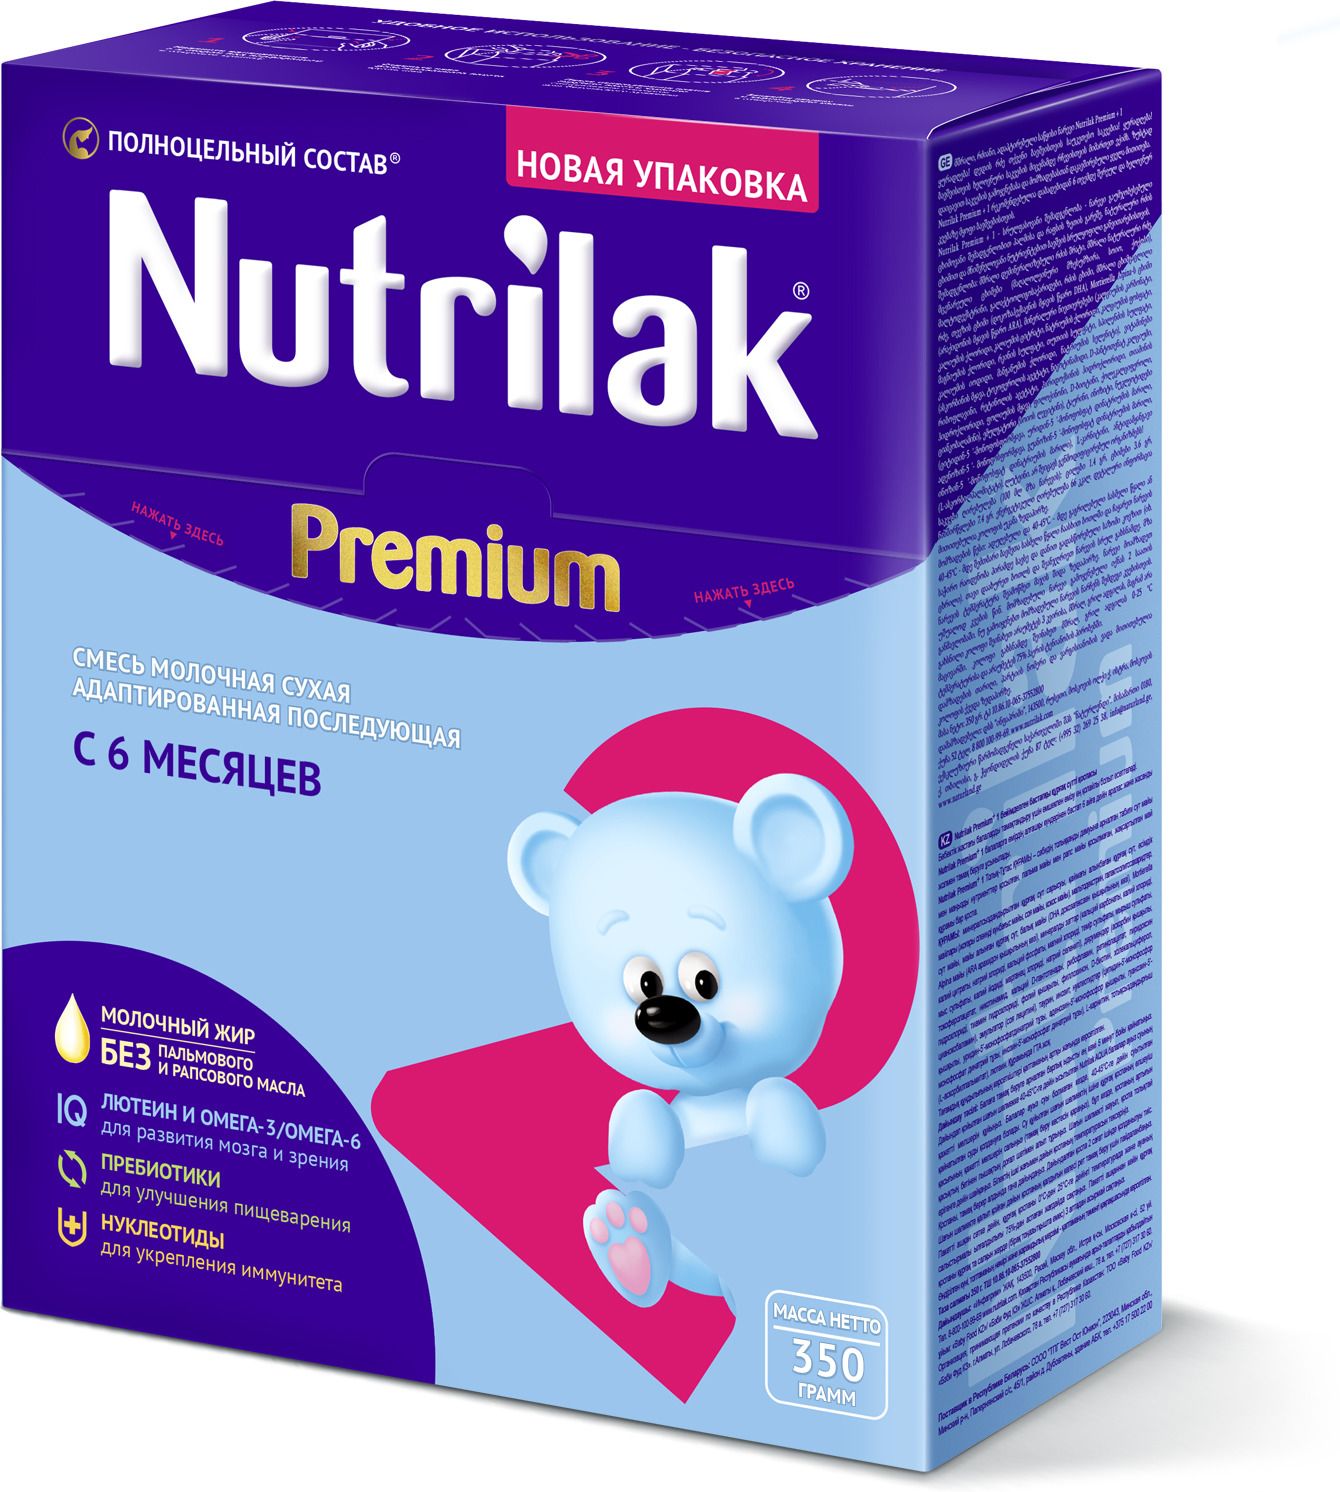 Nutrilak Premium+ 2    6 , 350 